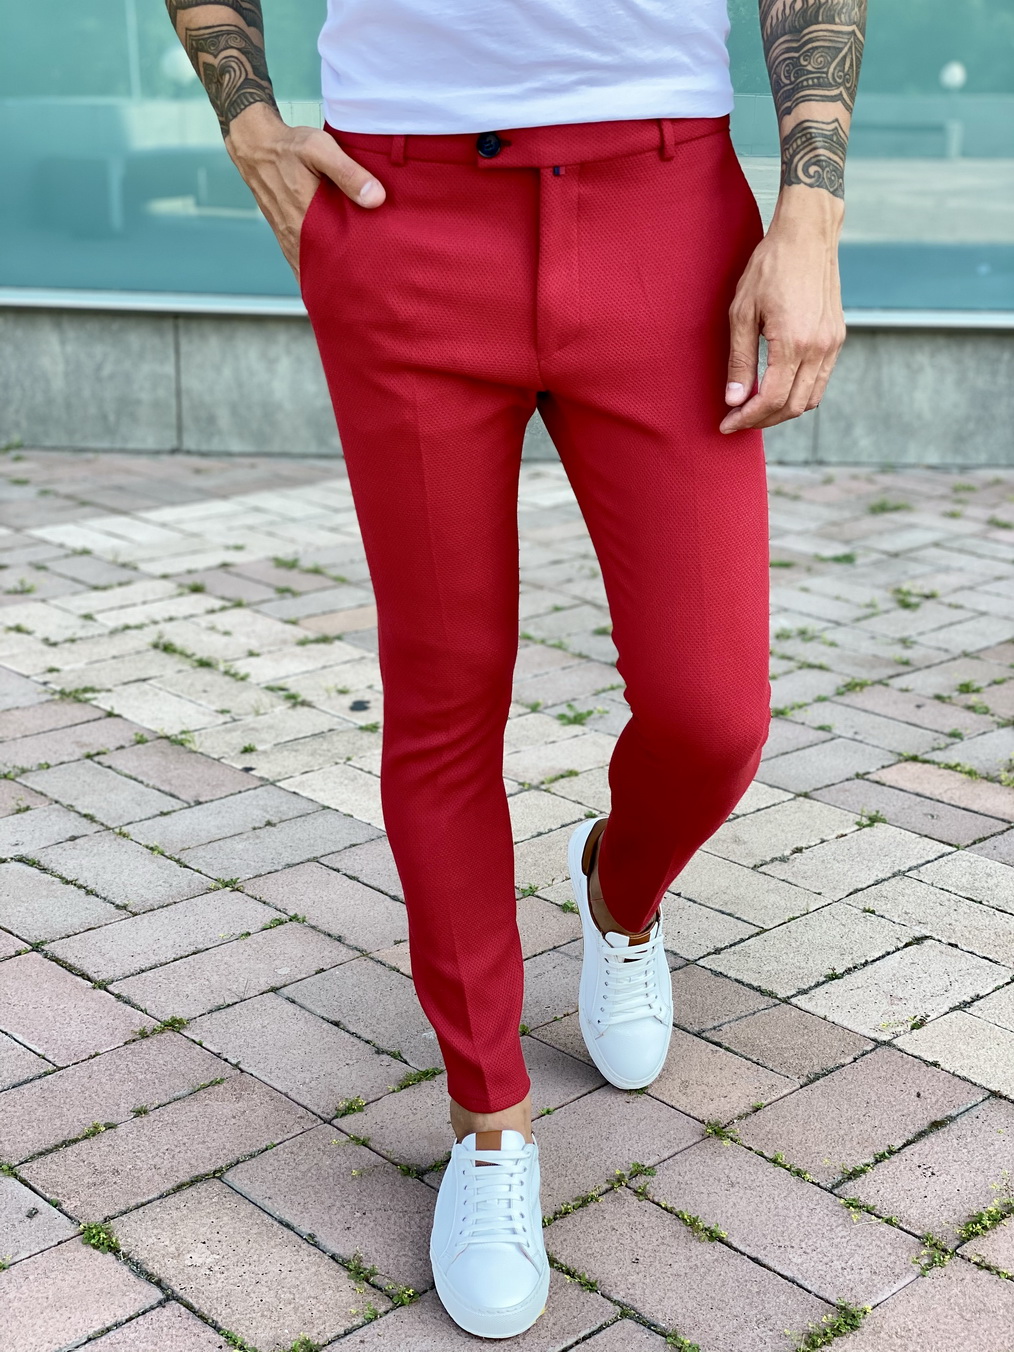 Мужские красные брюки slim fit. Арт.:2401 – купить в магазине мужскойодежды Smartcasuals